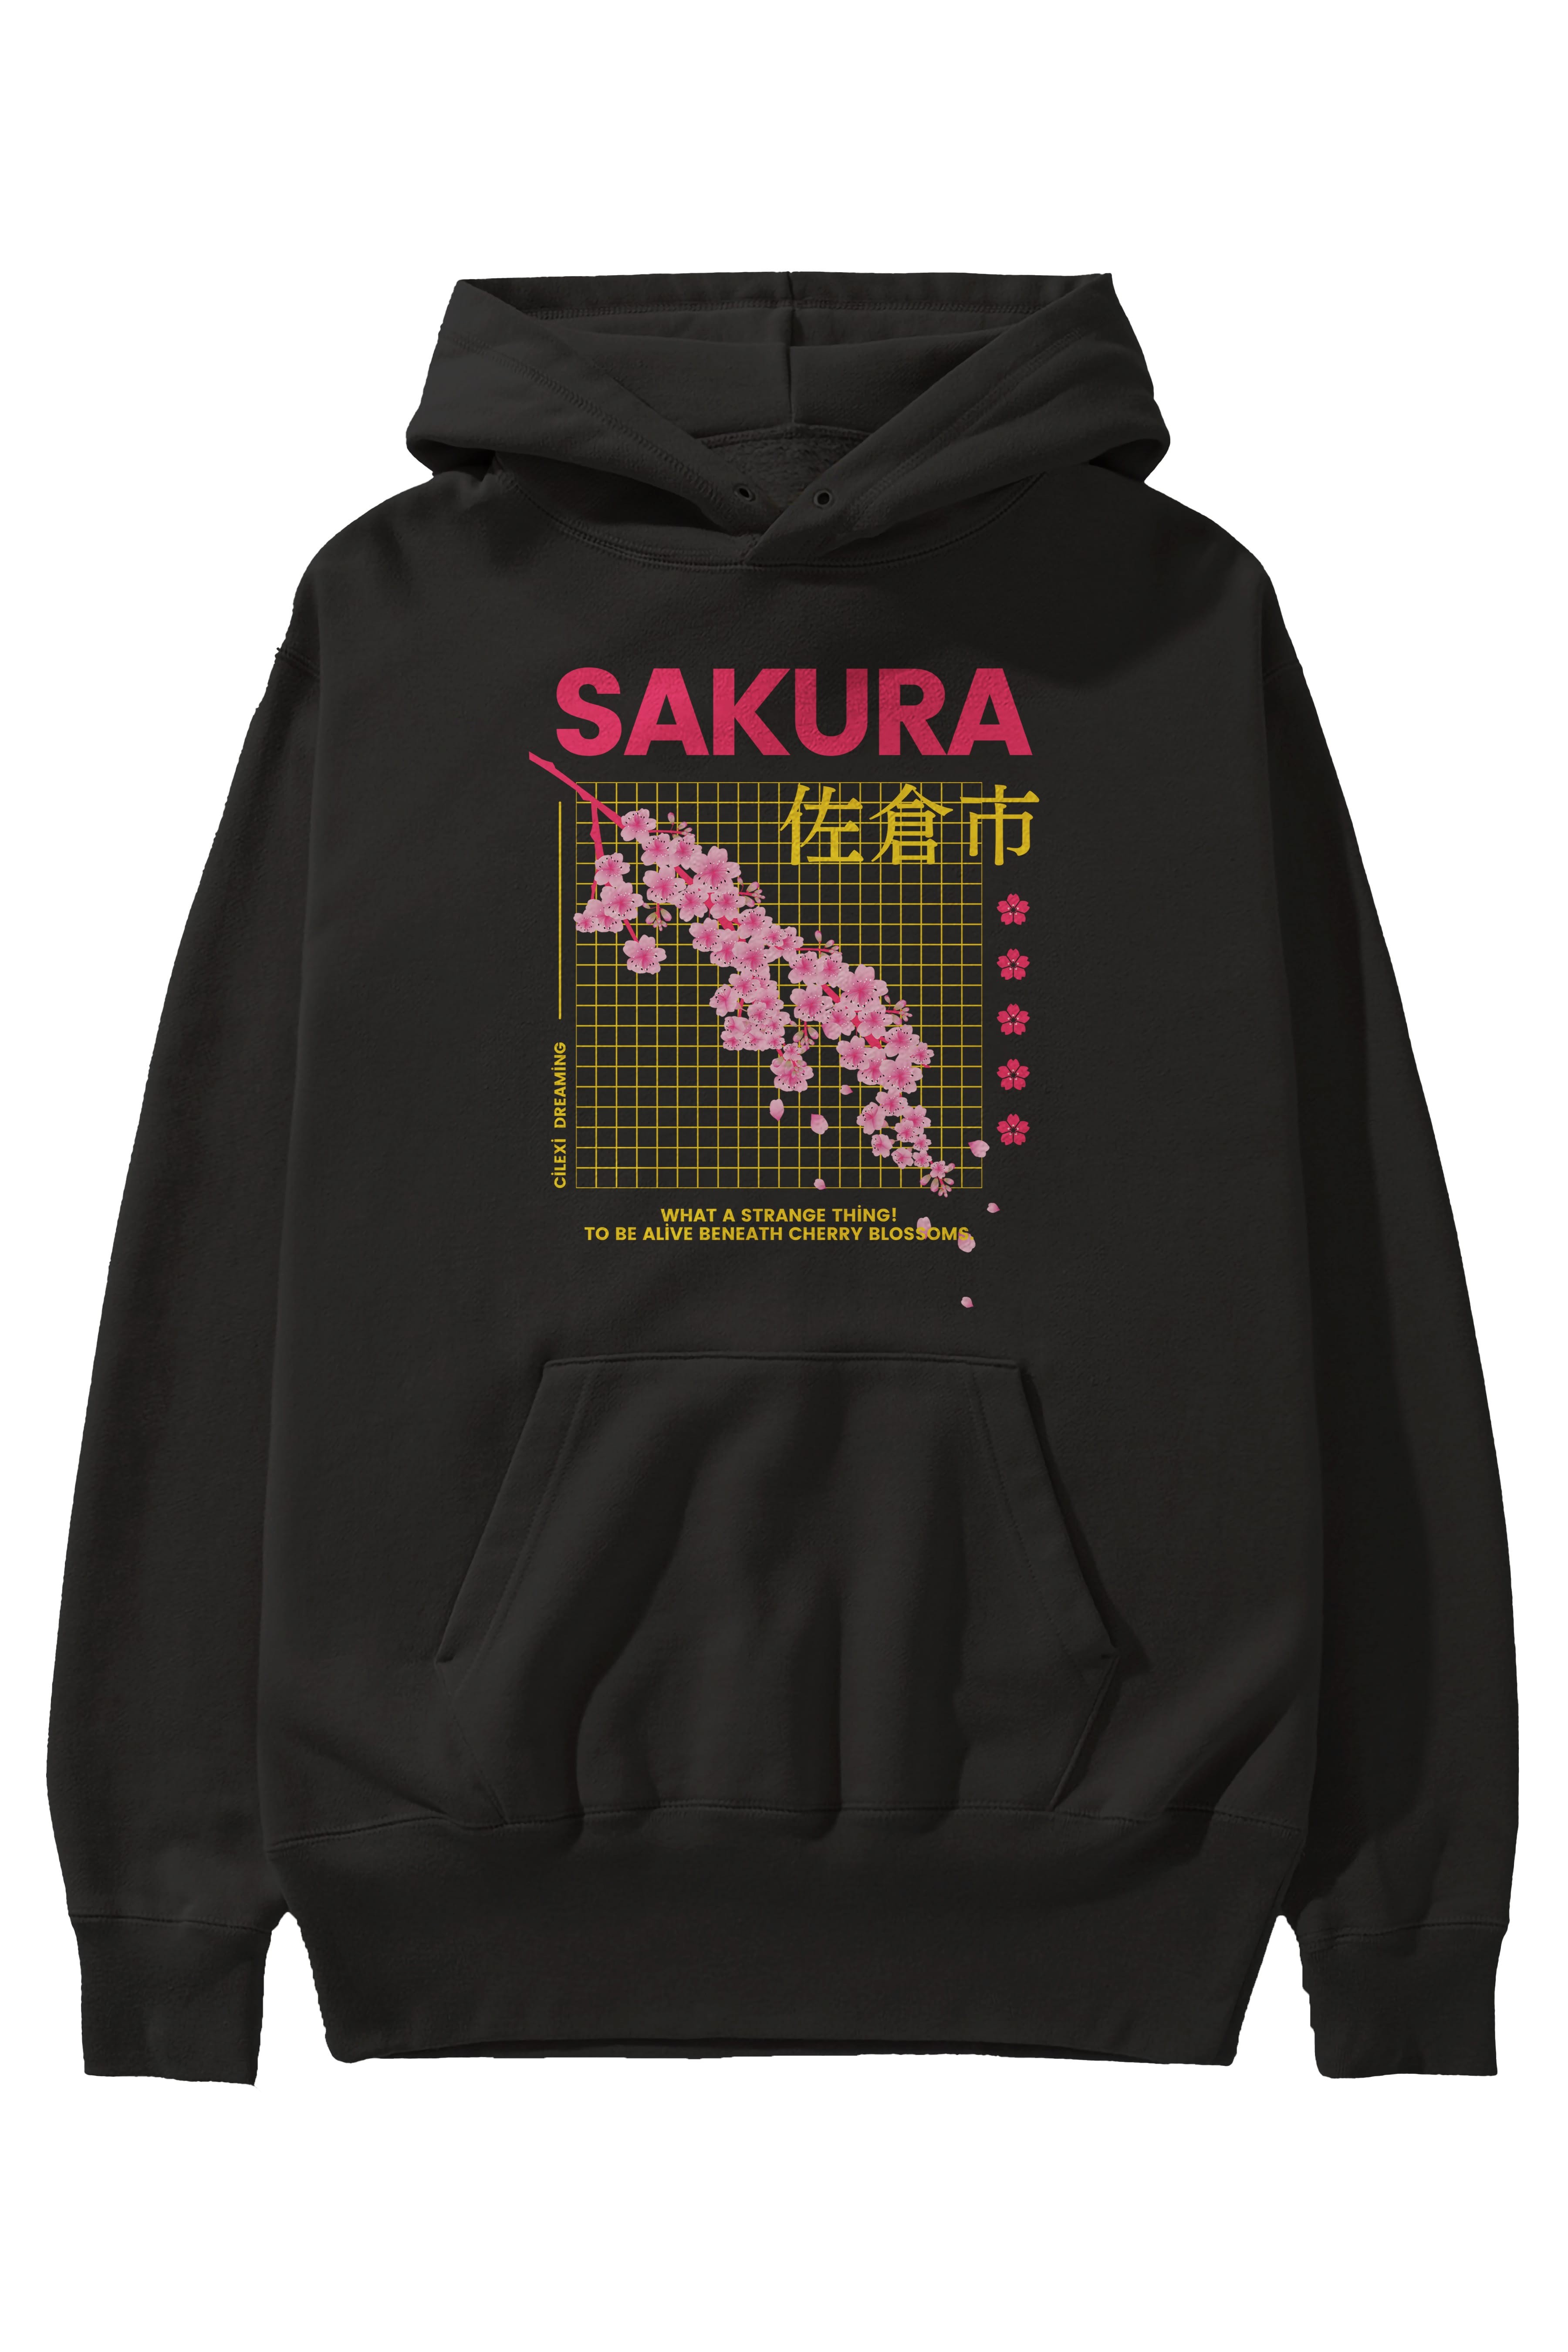 Sakura Streetwear Ön Baskılı Oversize Hoodie Kapüşonlu Sweatshirt Erkek Kadın Unisex